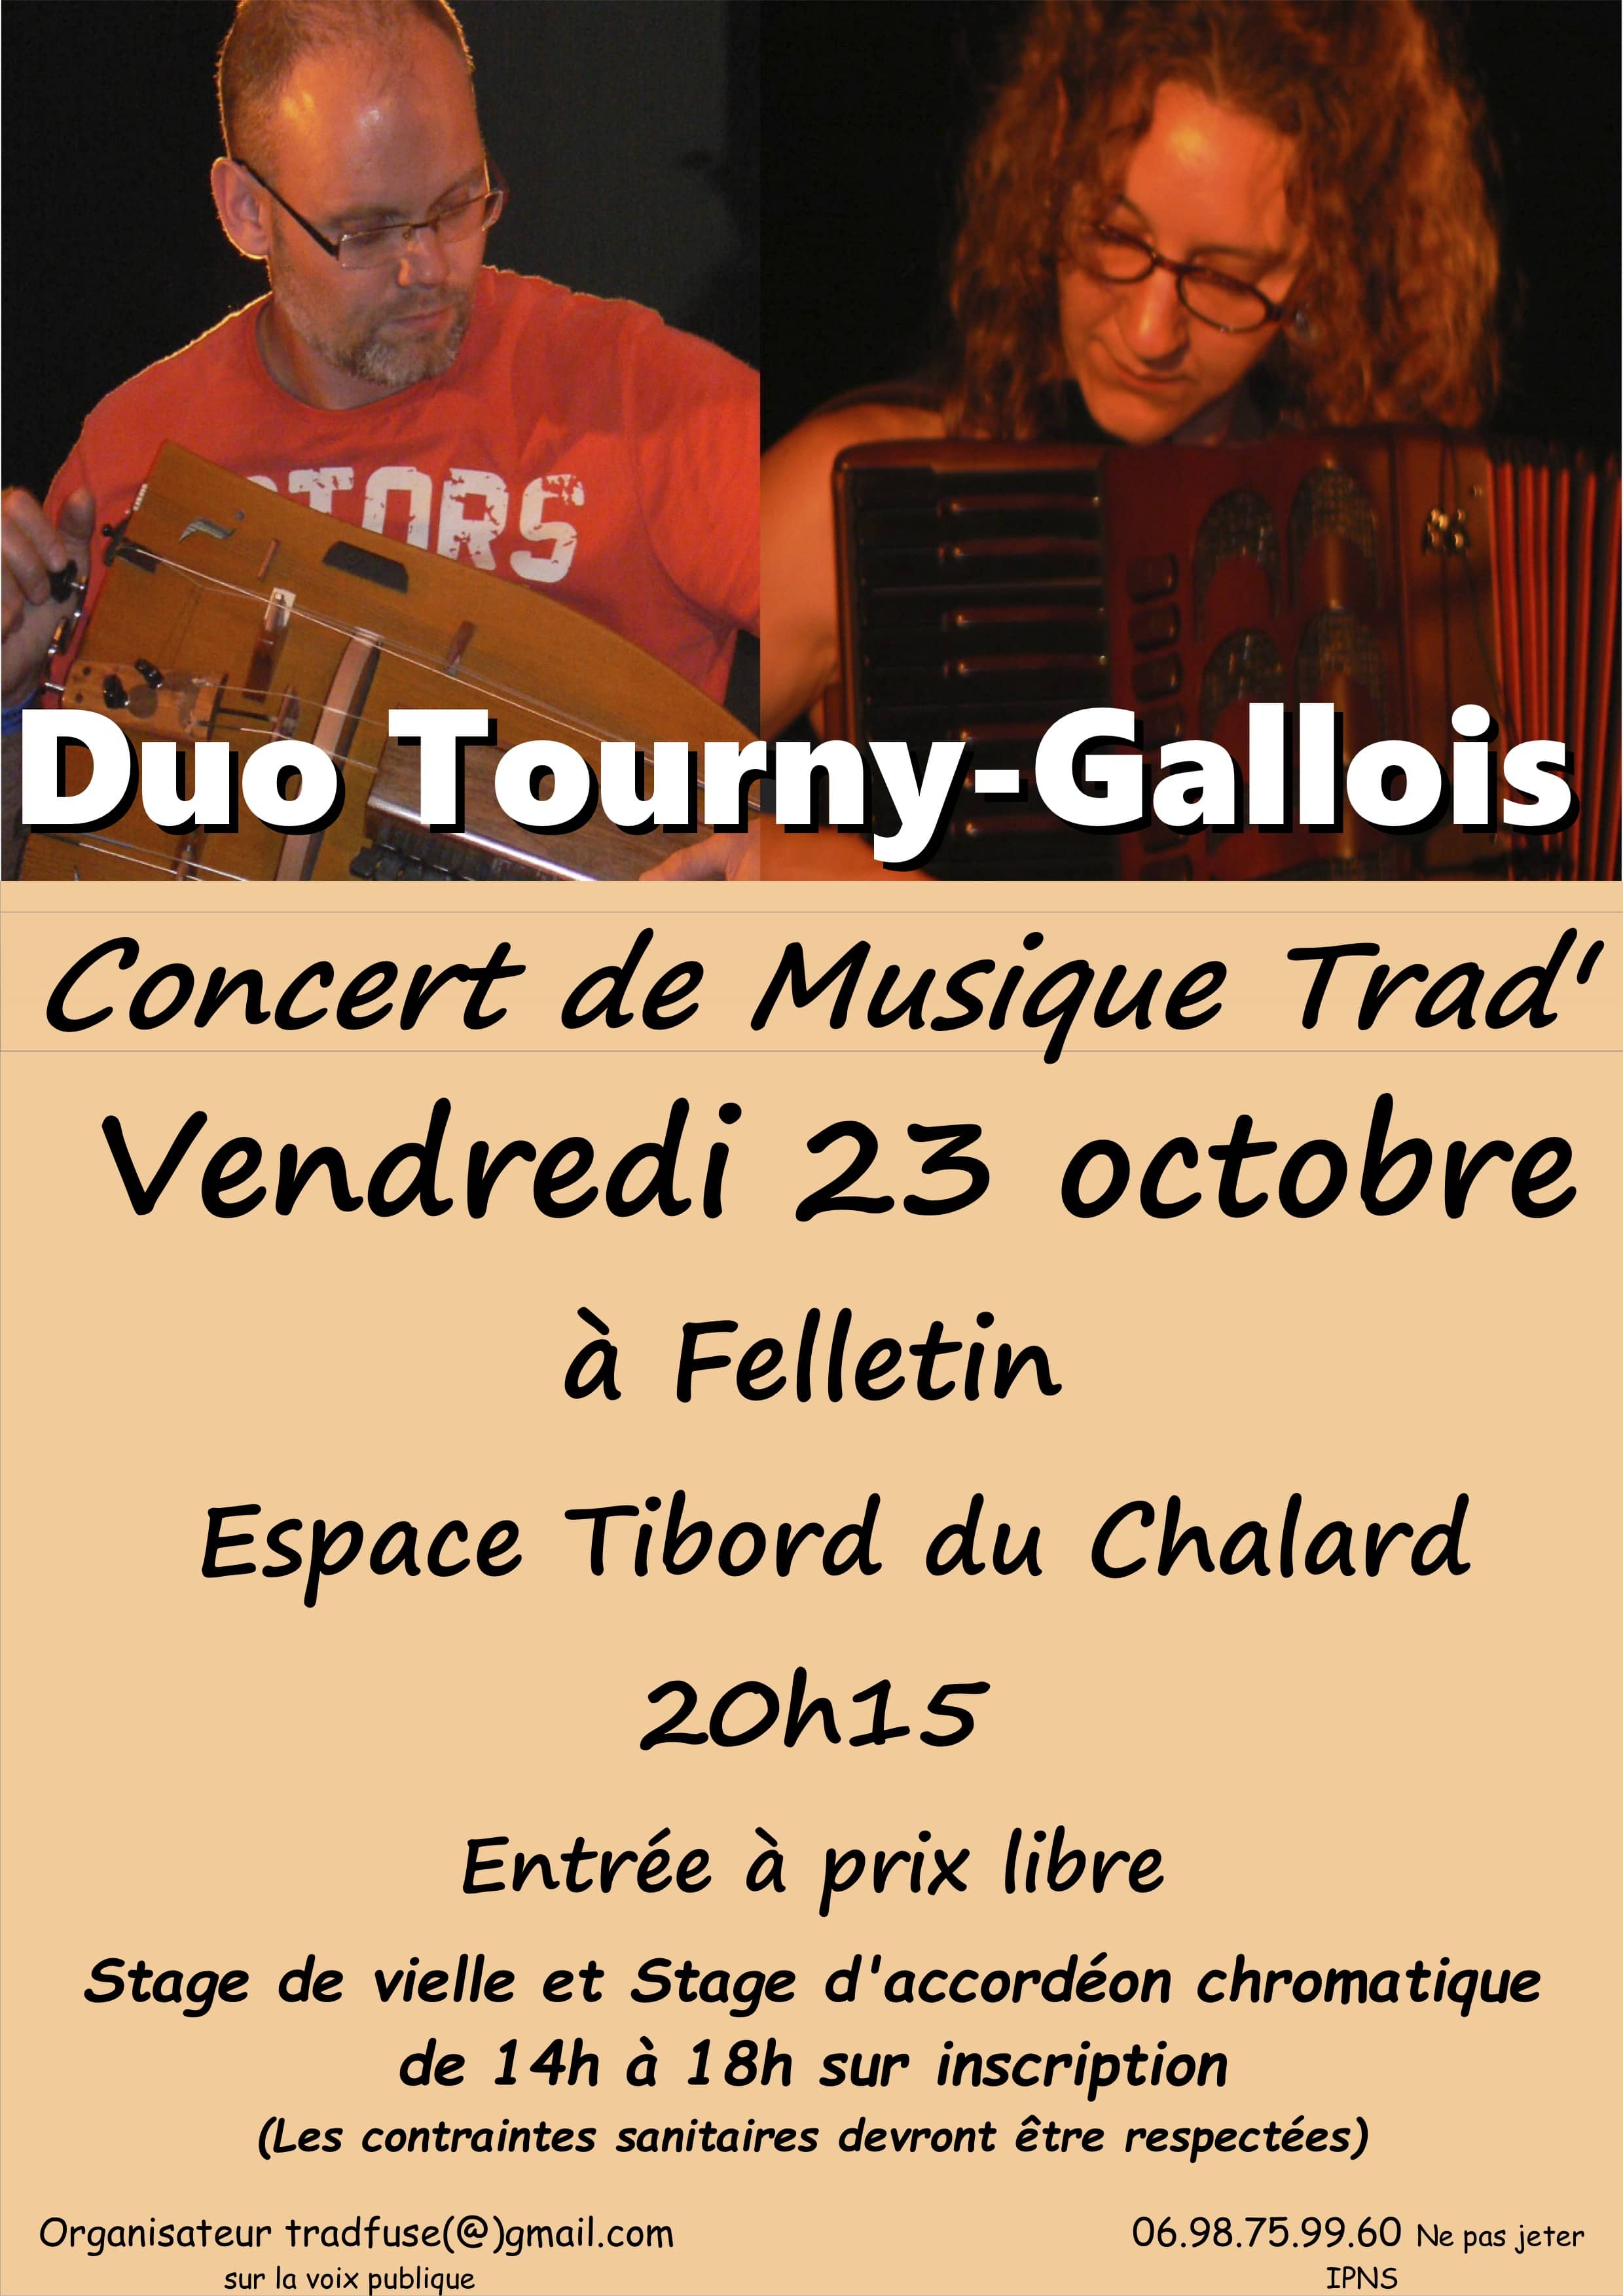 Stage vielle/accordéon chromatique & concert « Duo Tourny-Gallois »